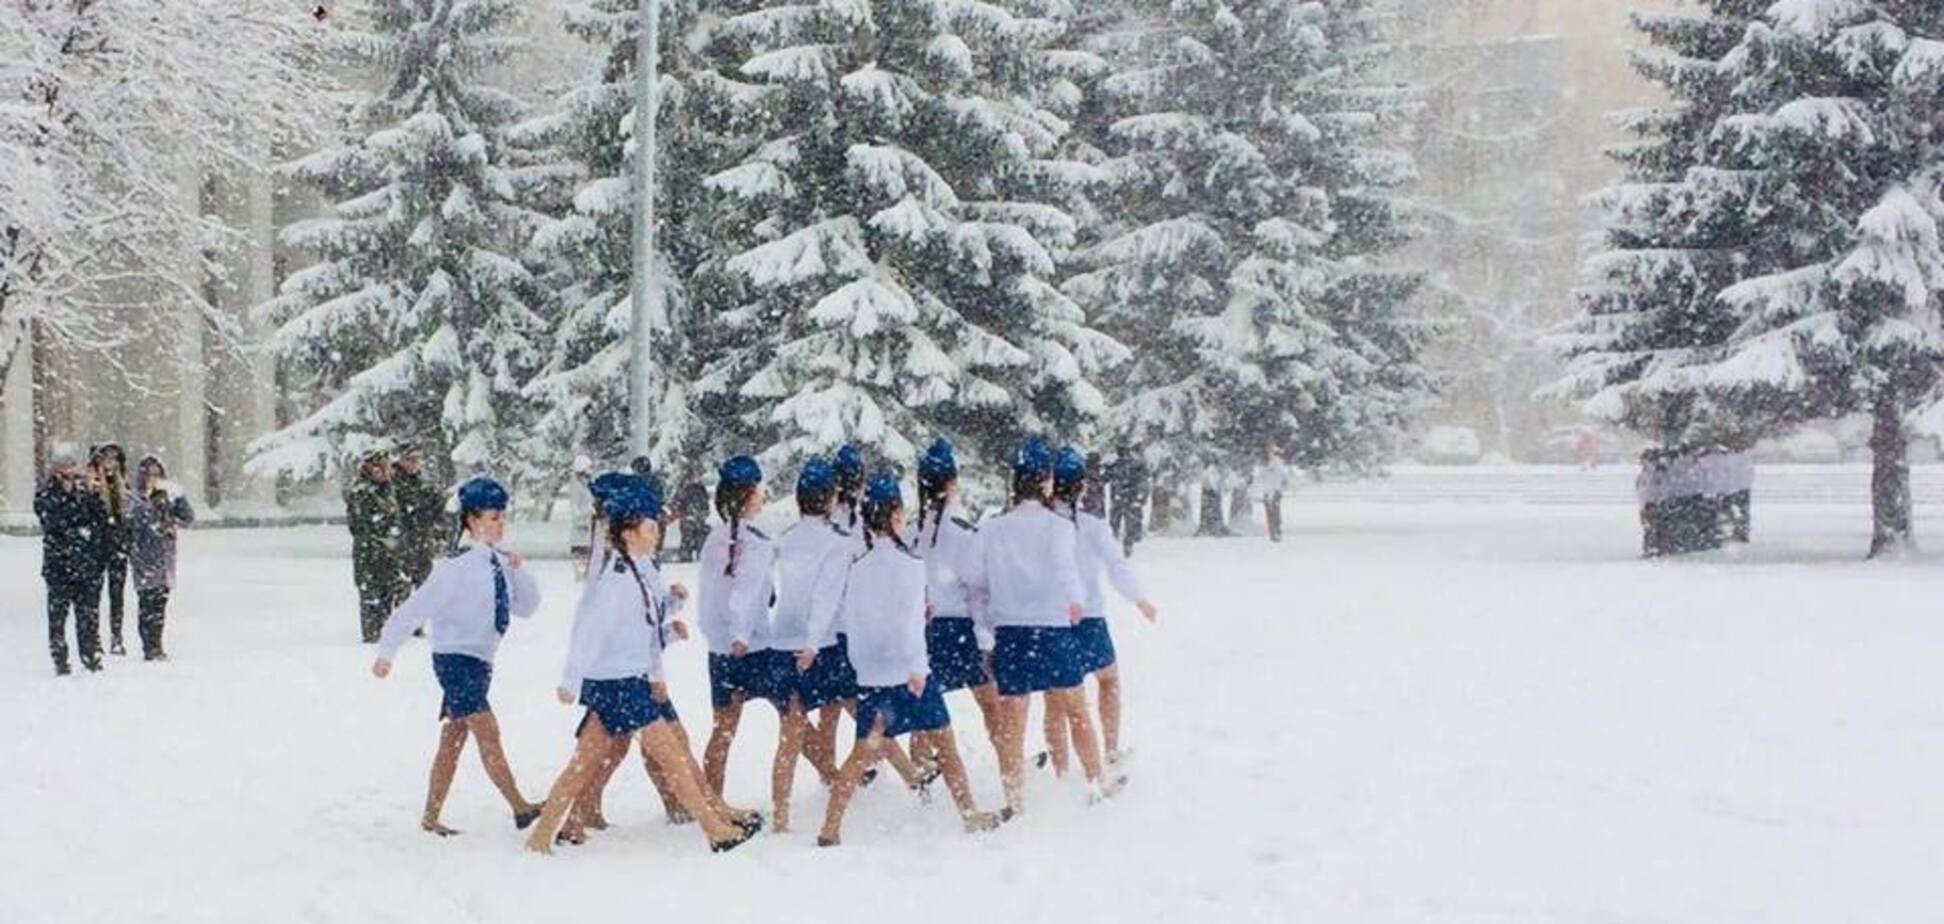 Российская 'офицерская честь' и раздетые дети на снегу